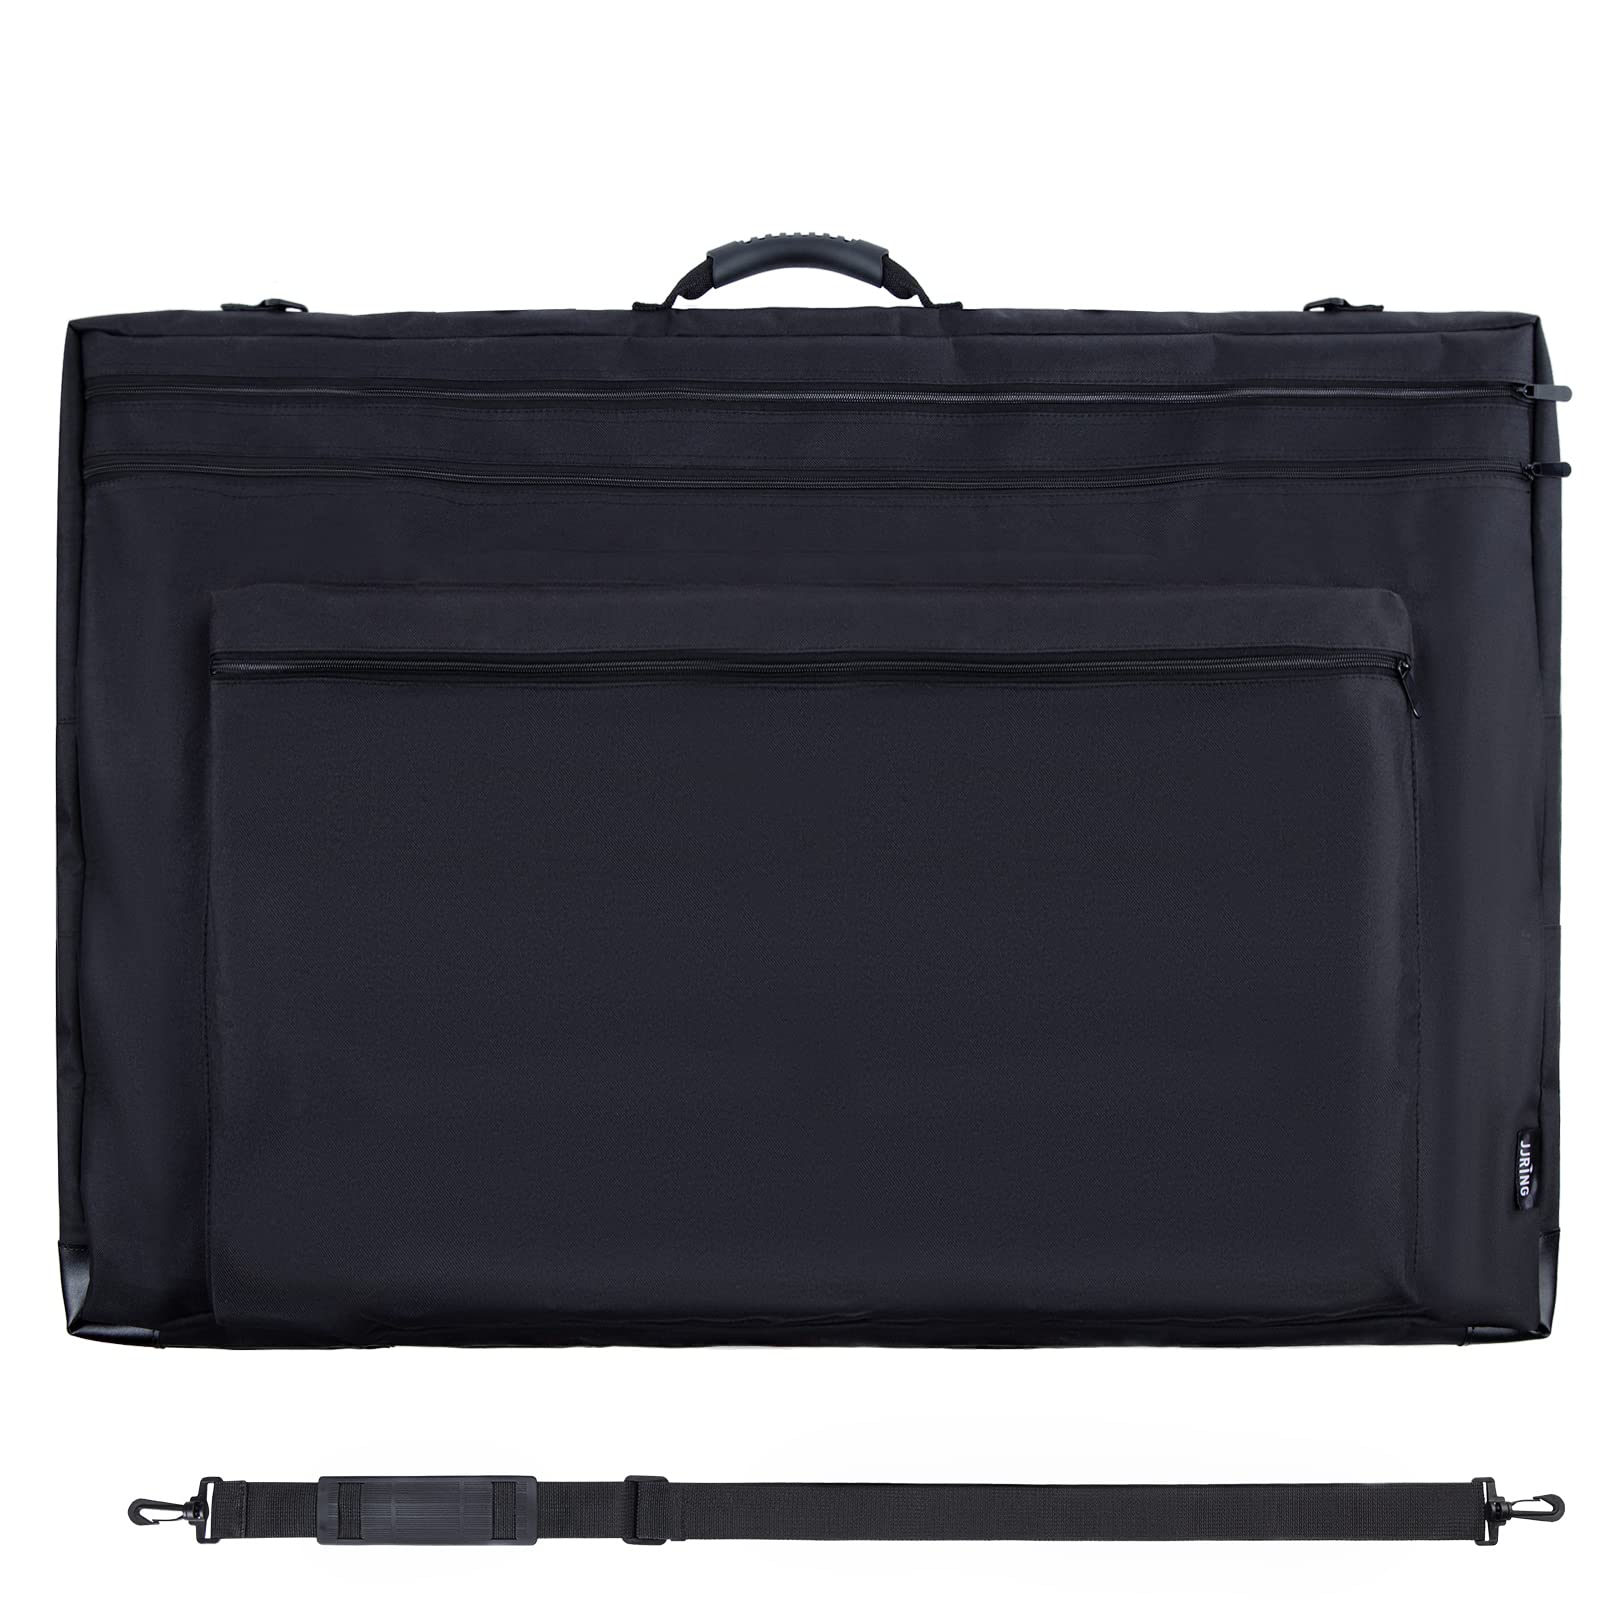 JJRING 24x36 Art Portfolio Tote Bag - Large Carrying Storage Case with  Handle & Adjustable Shoulder Strap